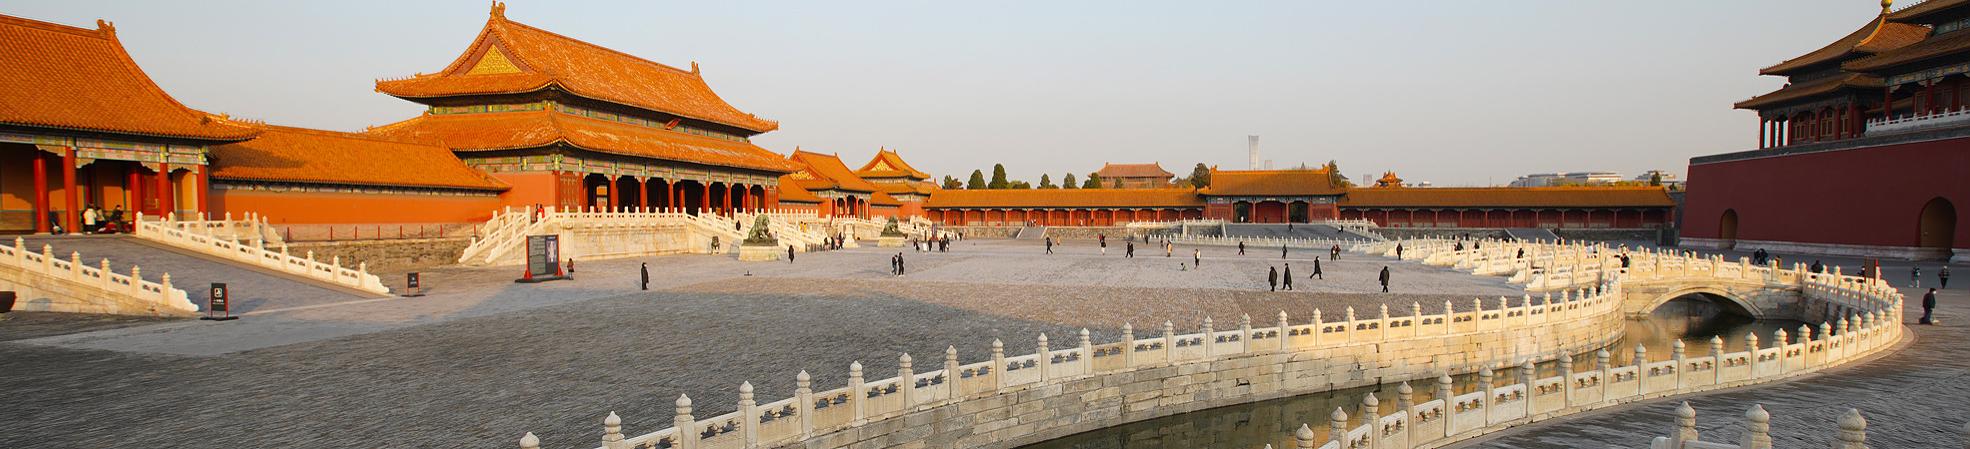 Great Wall Tours: Badaling, Mutianyu, Jinshanlin and More